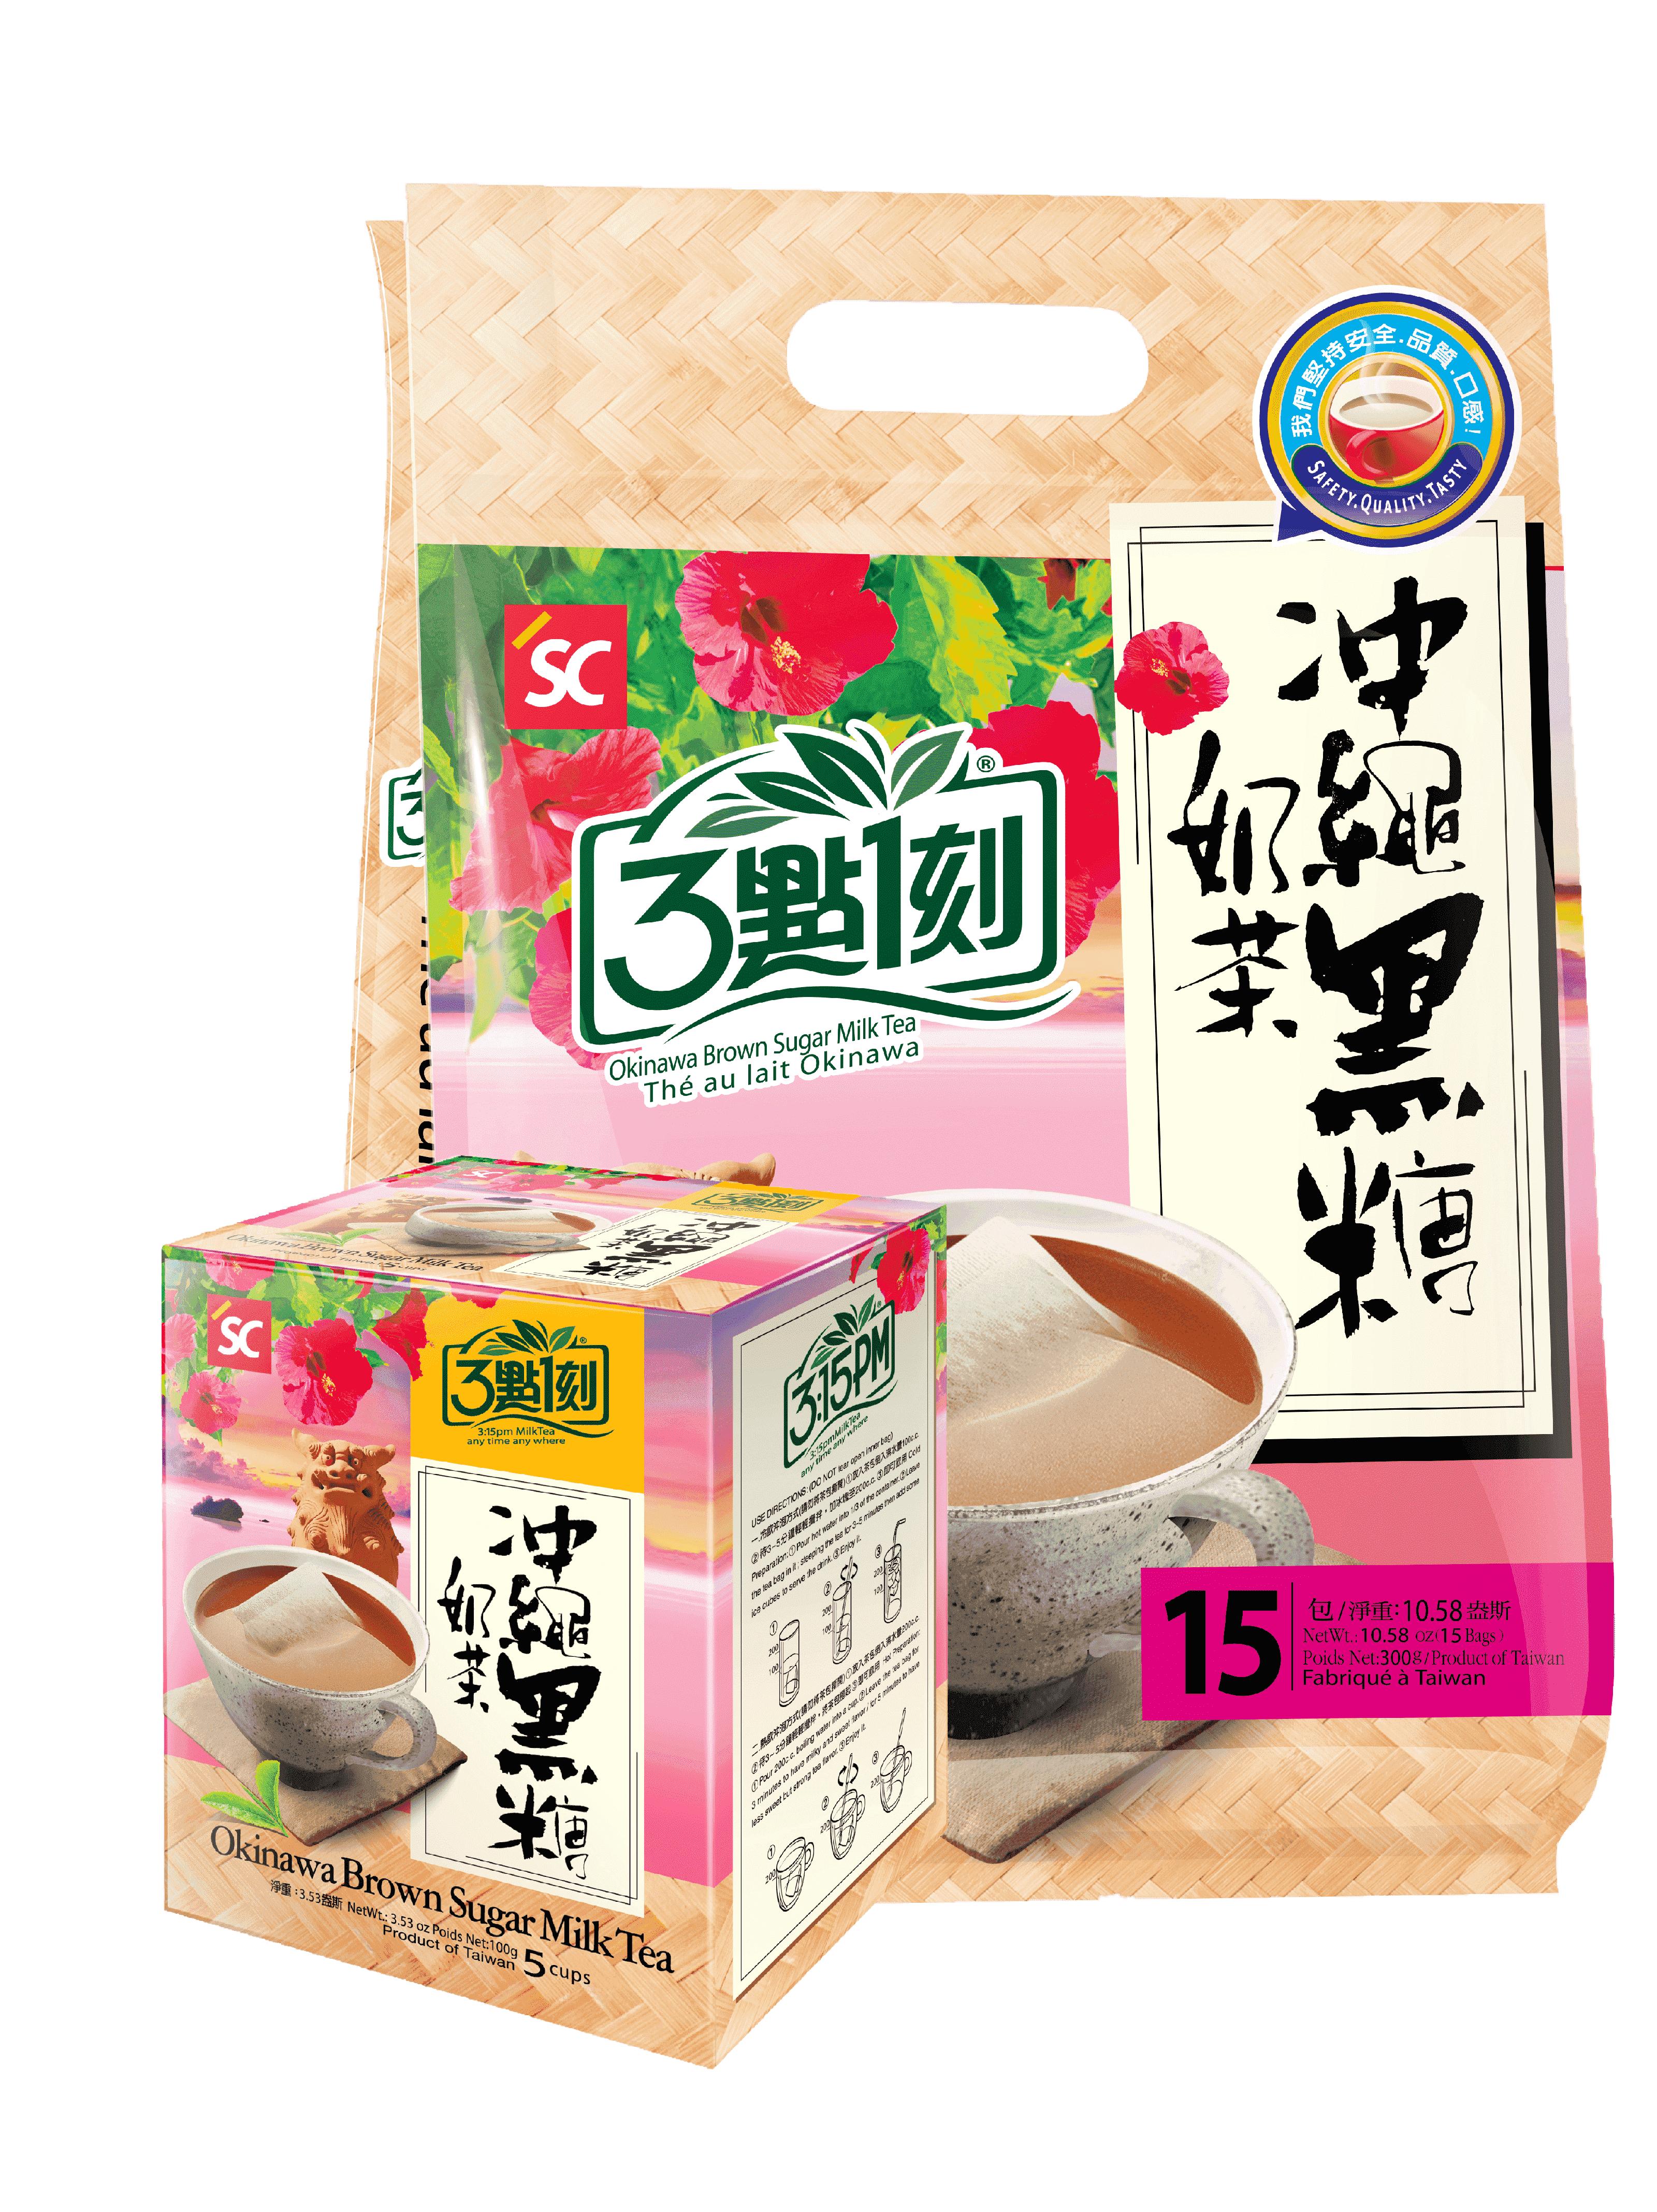 Trà sữa Đài Loan túi lọc 3:15PM vị đường đen Okinawa Brown Sugar hộp 5 gói (20g/gói) - HSD 17/03/2021